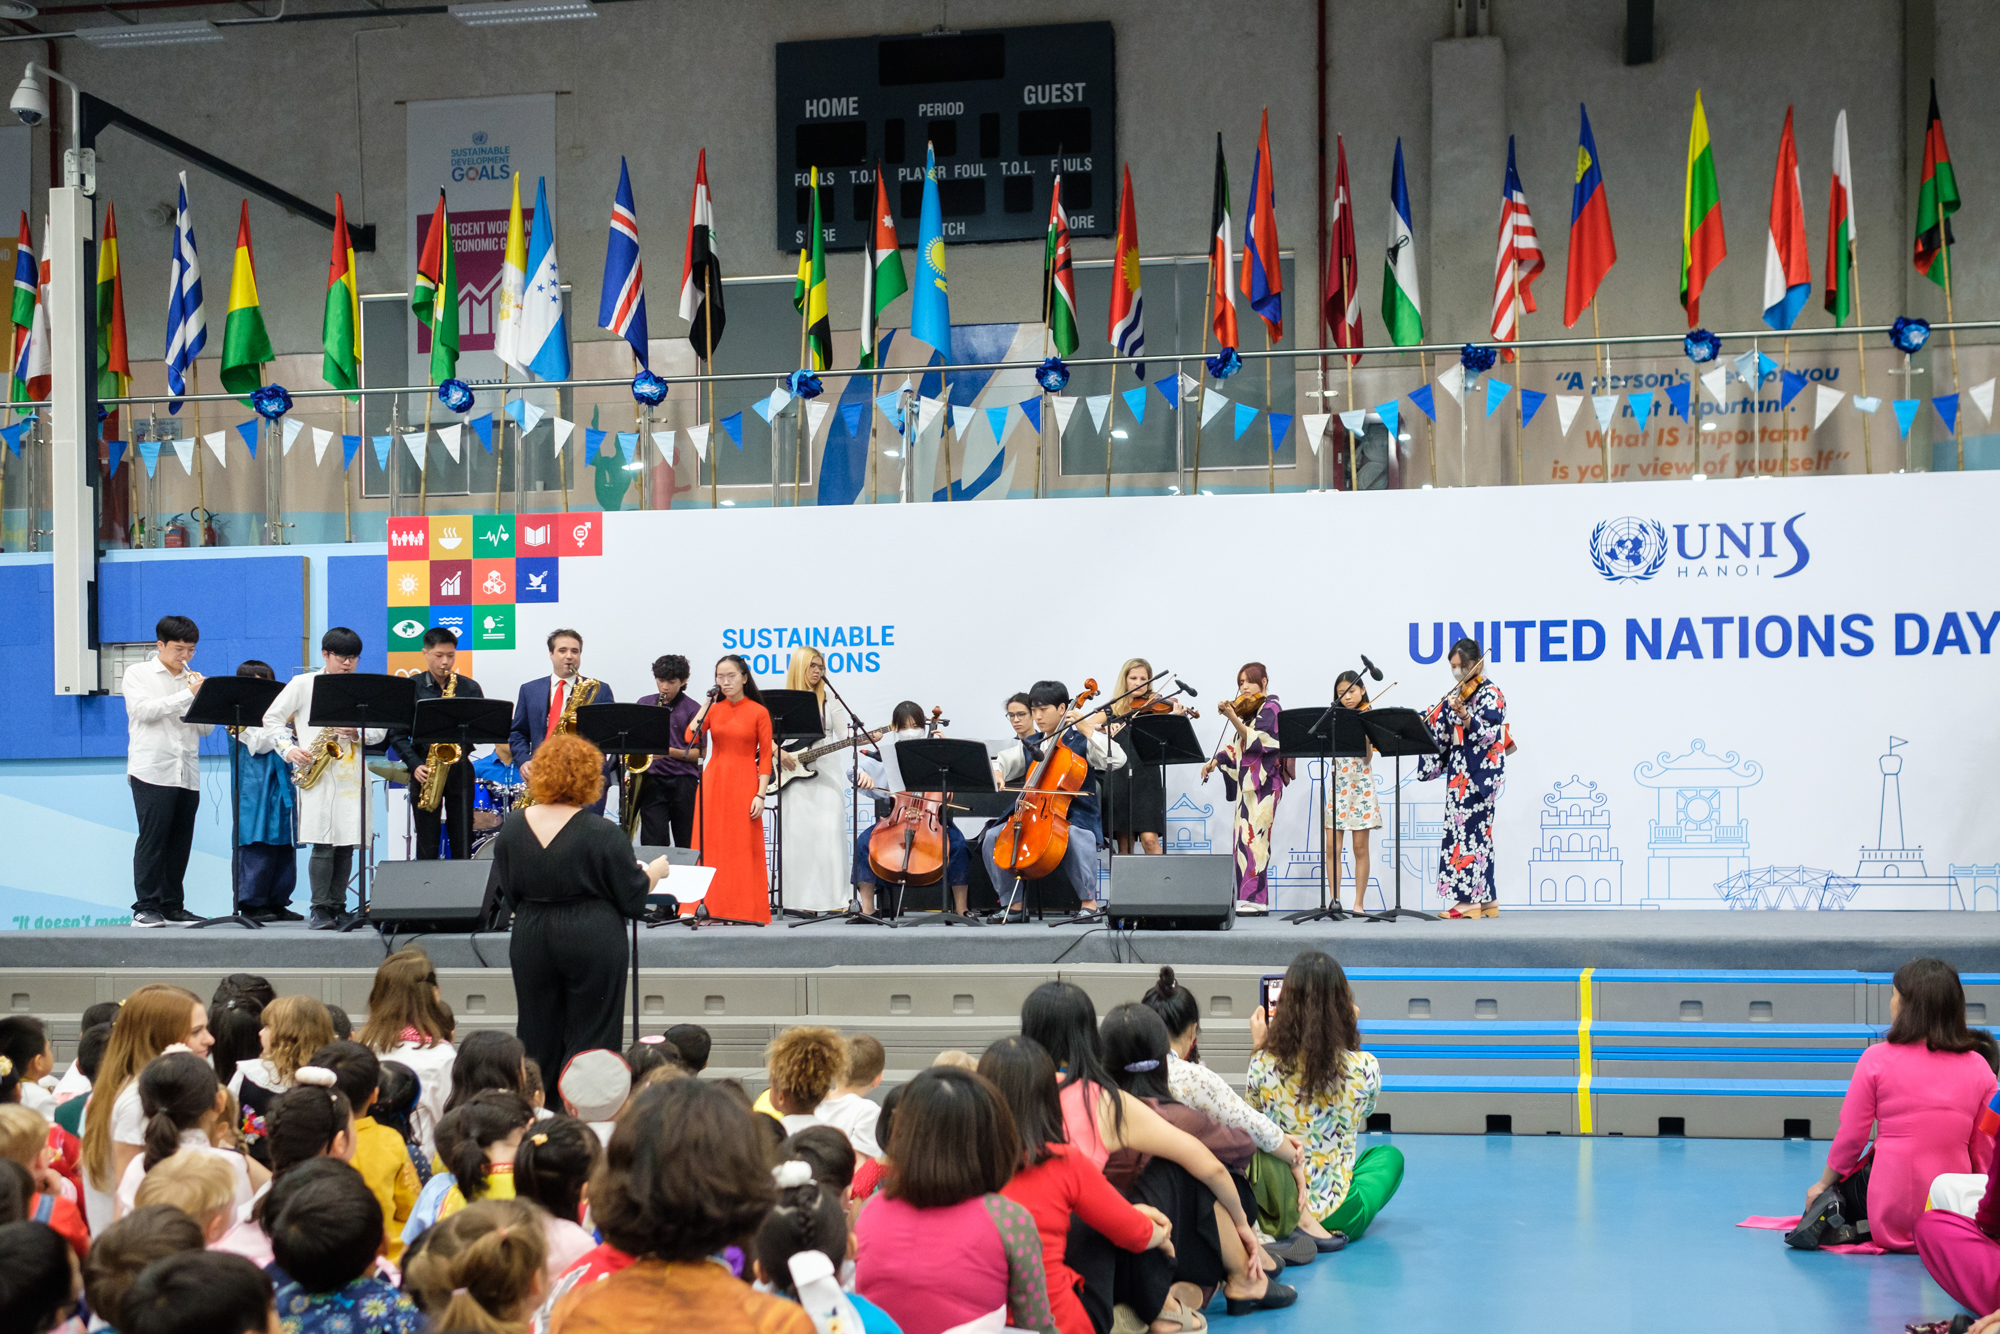 Ngày hội Liên Hợp Quốc tại trường UNIS Hà Nội: Ấn tượng với màn diễu cờ đầy hoành tráng - Ảnh 5.